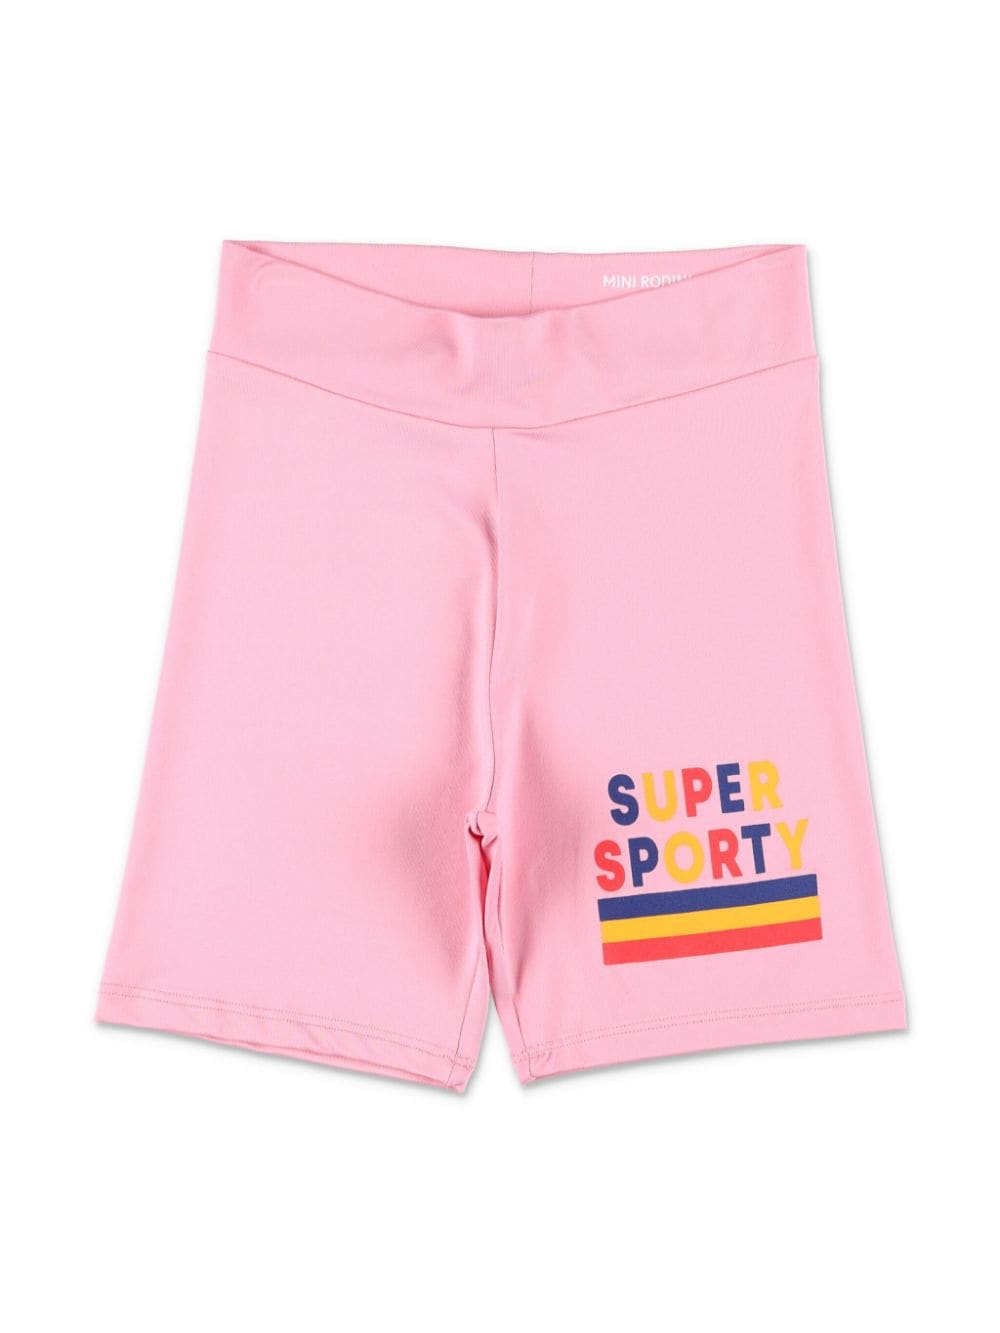 Mini Rodini Super Sporty shorts - Pink von Mini Rodini